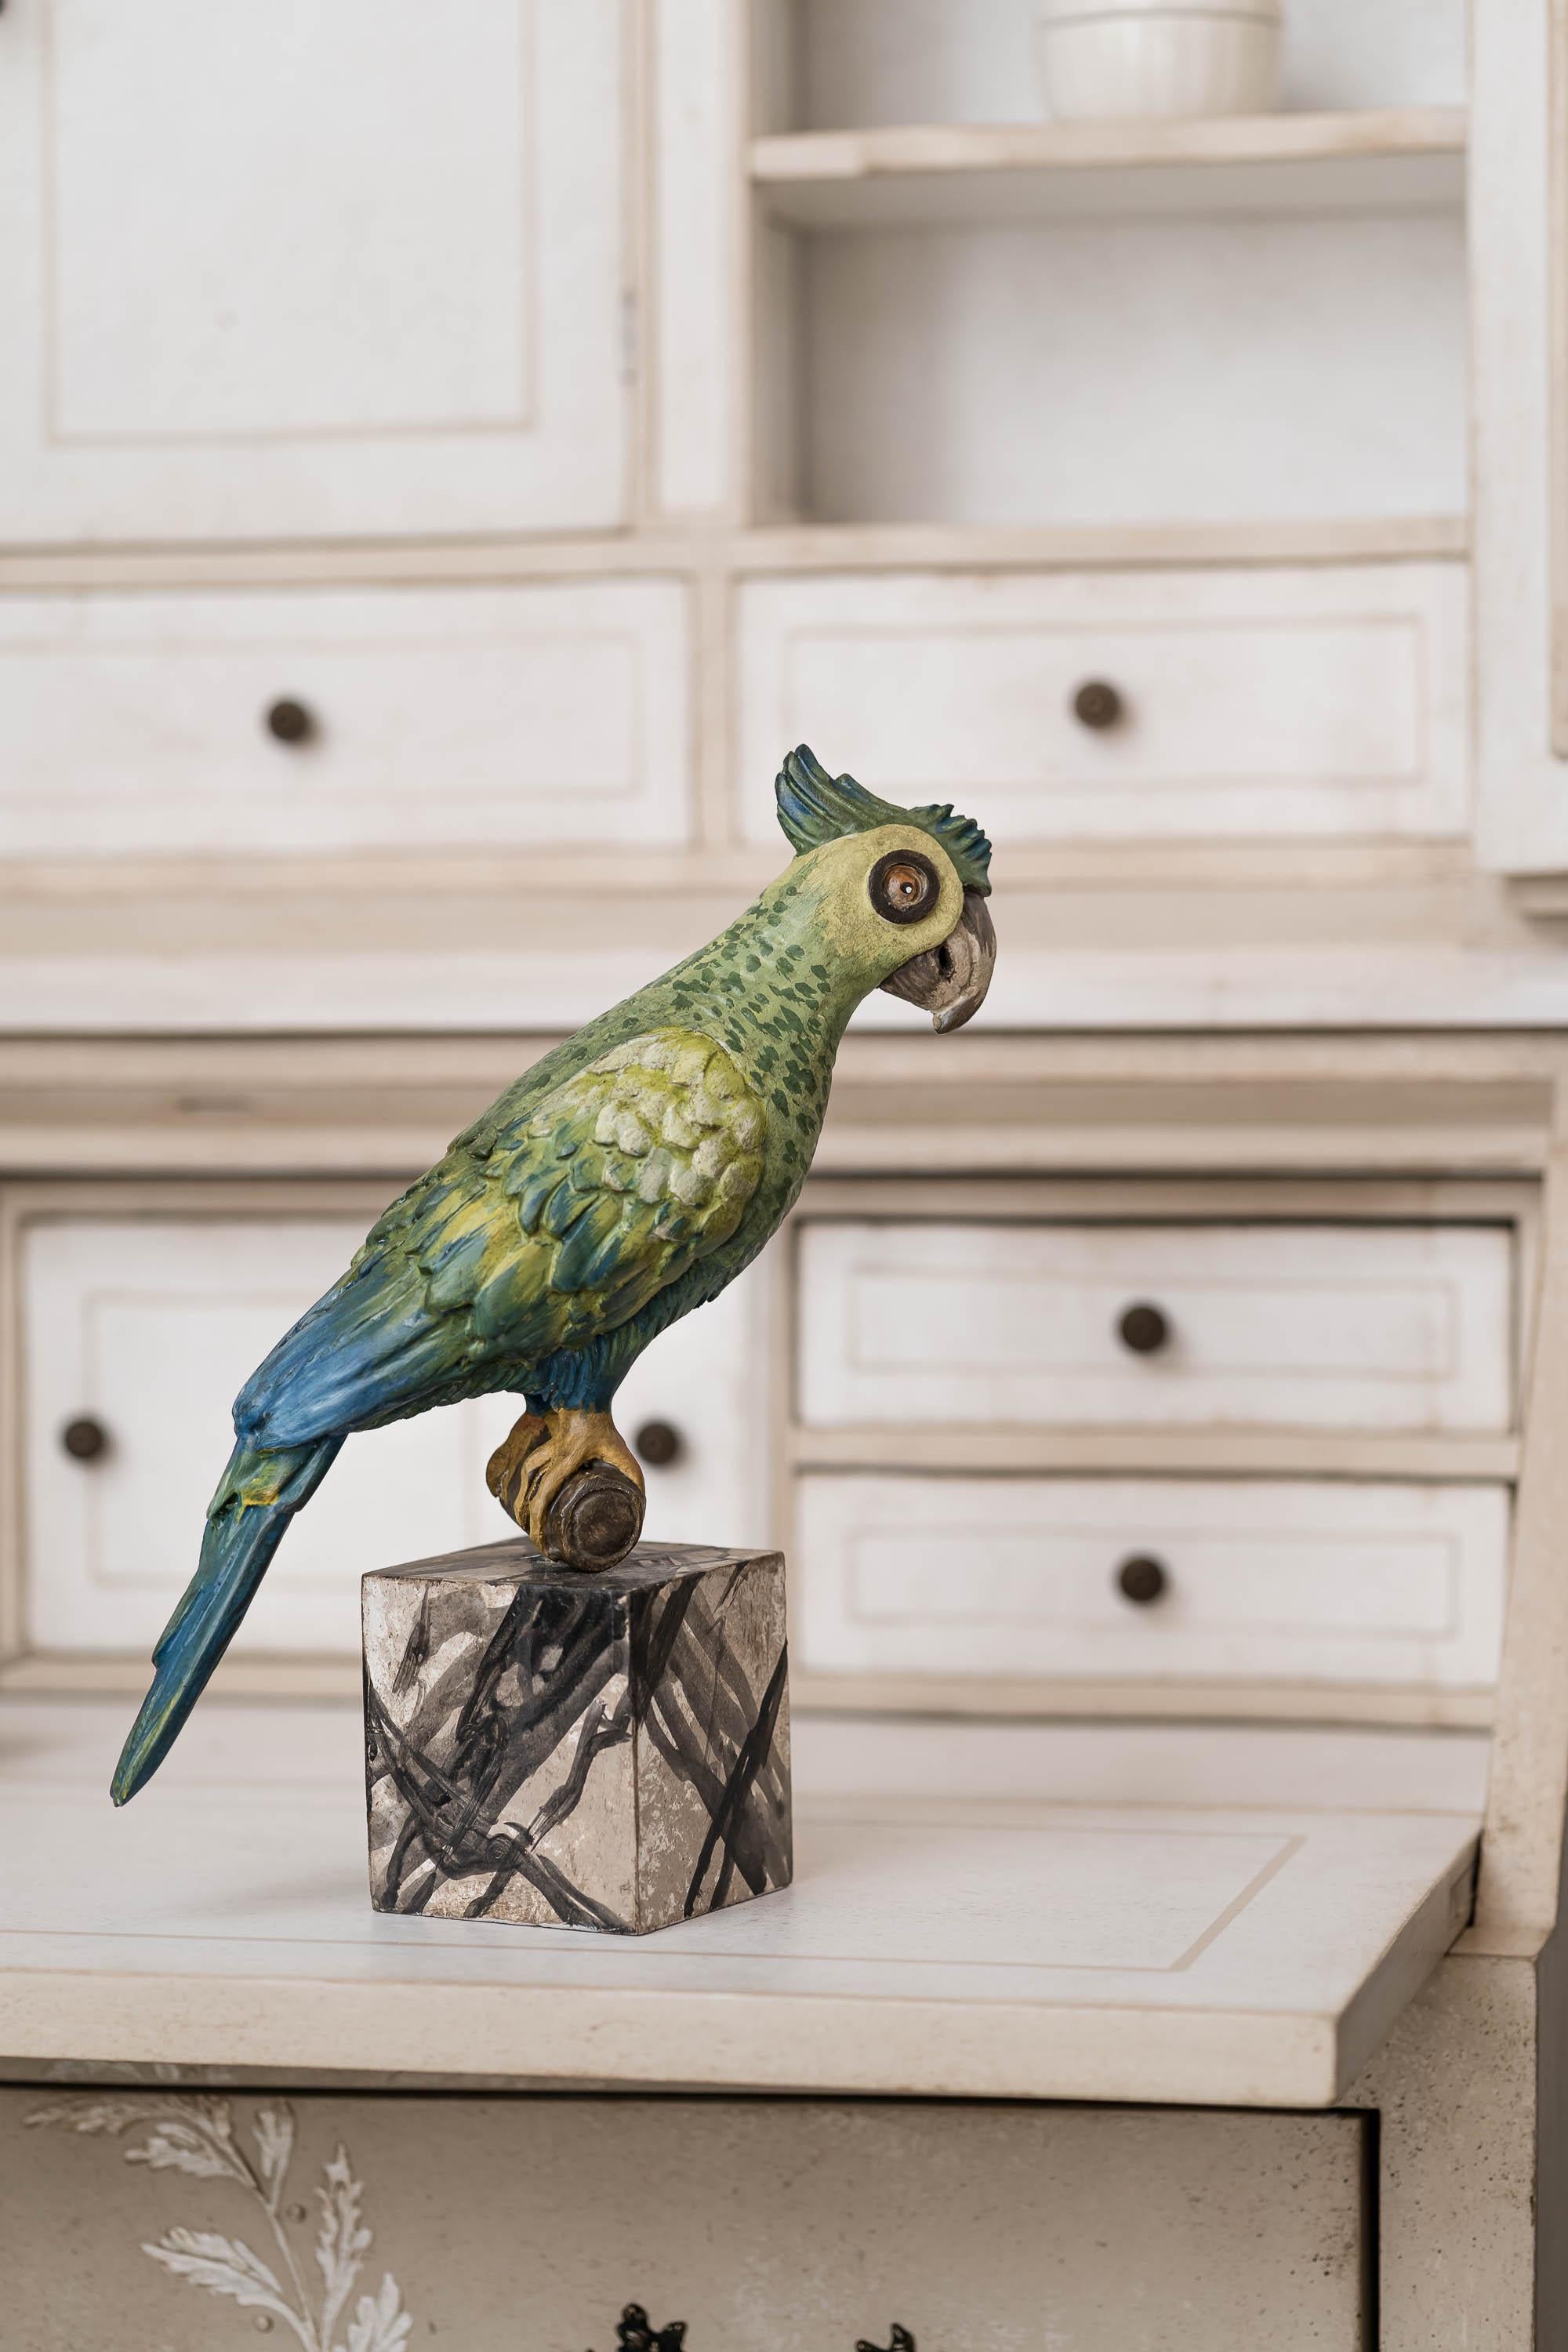 Aus unserer Hand-Painted Furniture Collection stellen wir Ihnen unseren dekorativen Papagei vor, der zu unserer Kategorie Accessoires und Wohnaccessoires gehört.
Wenn Sie einen Hauch von Abenteuer brauchen, auch wenn Sie nicht auf Reisen sind,